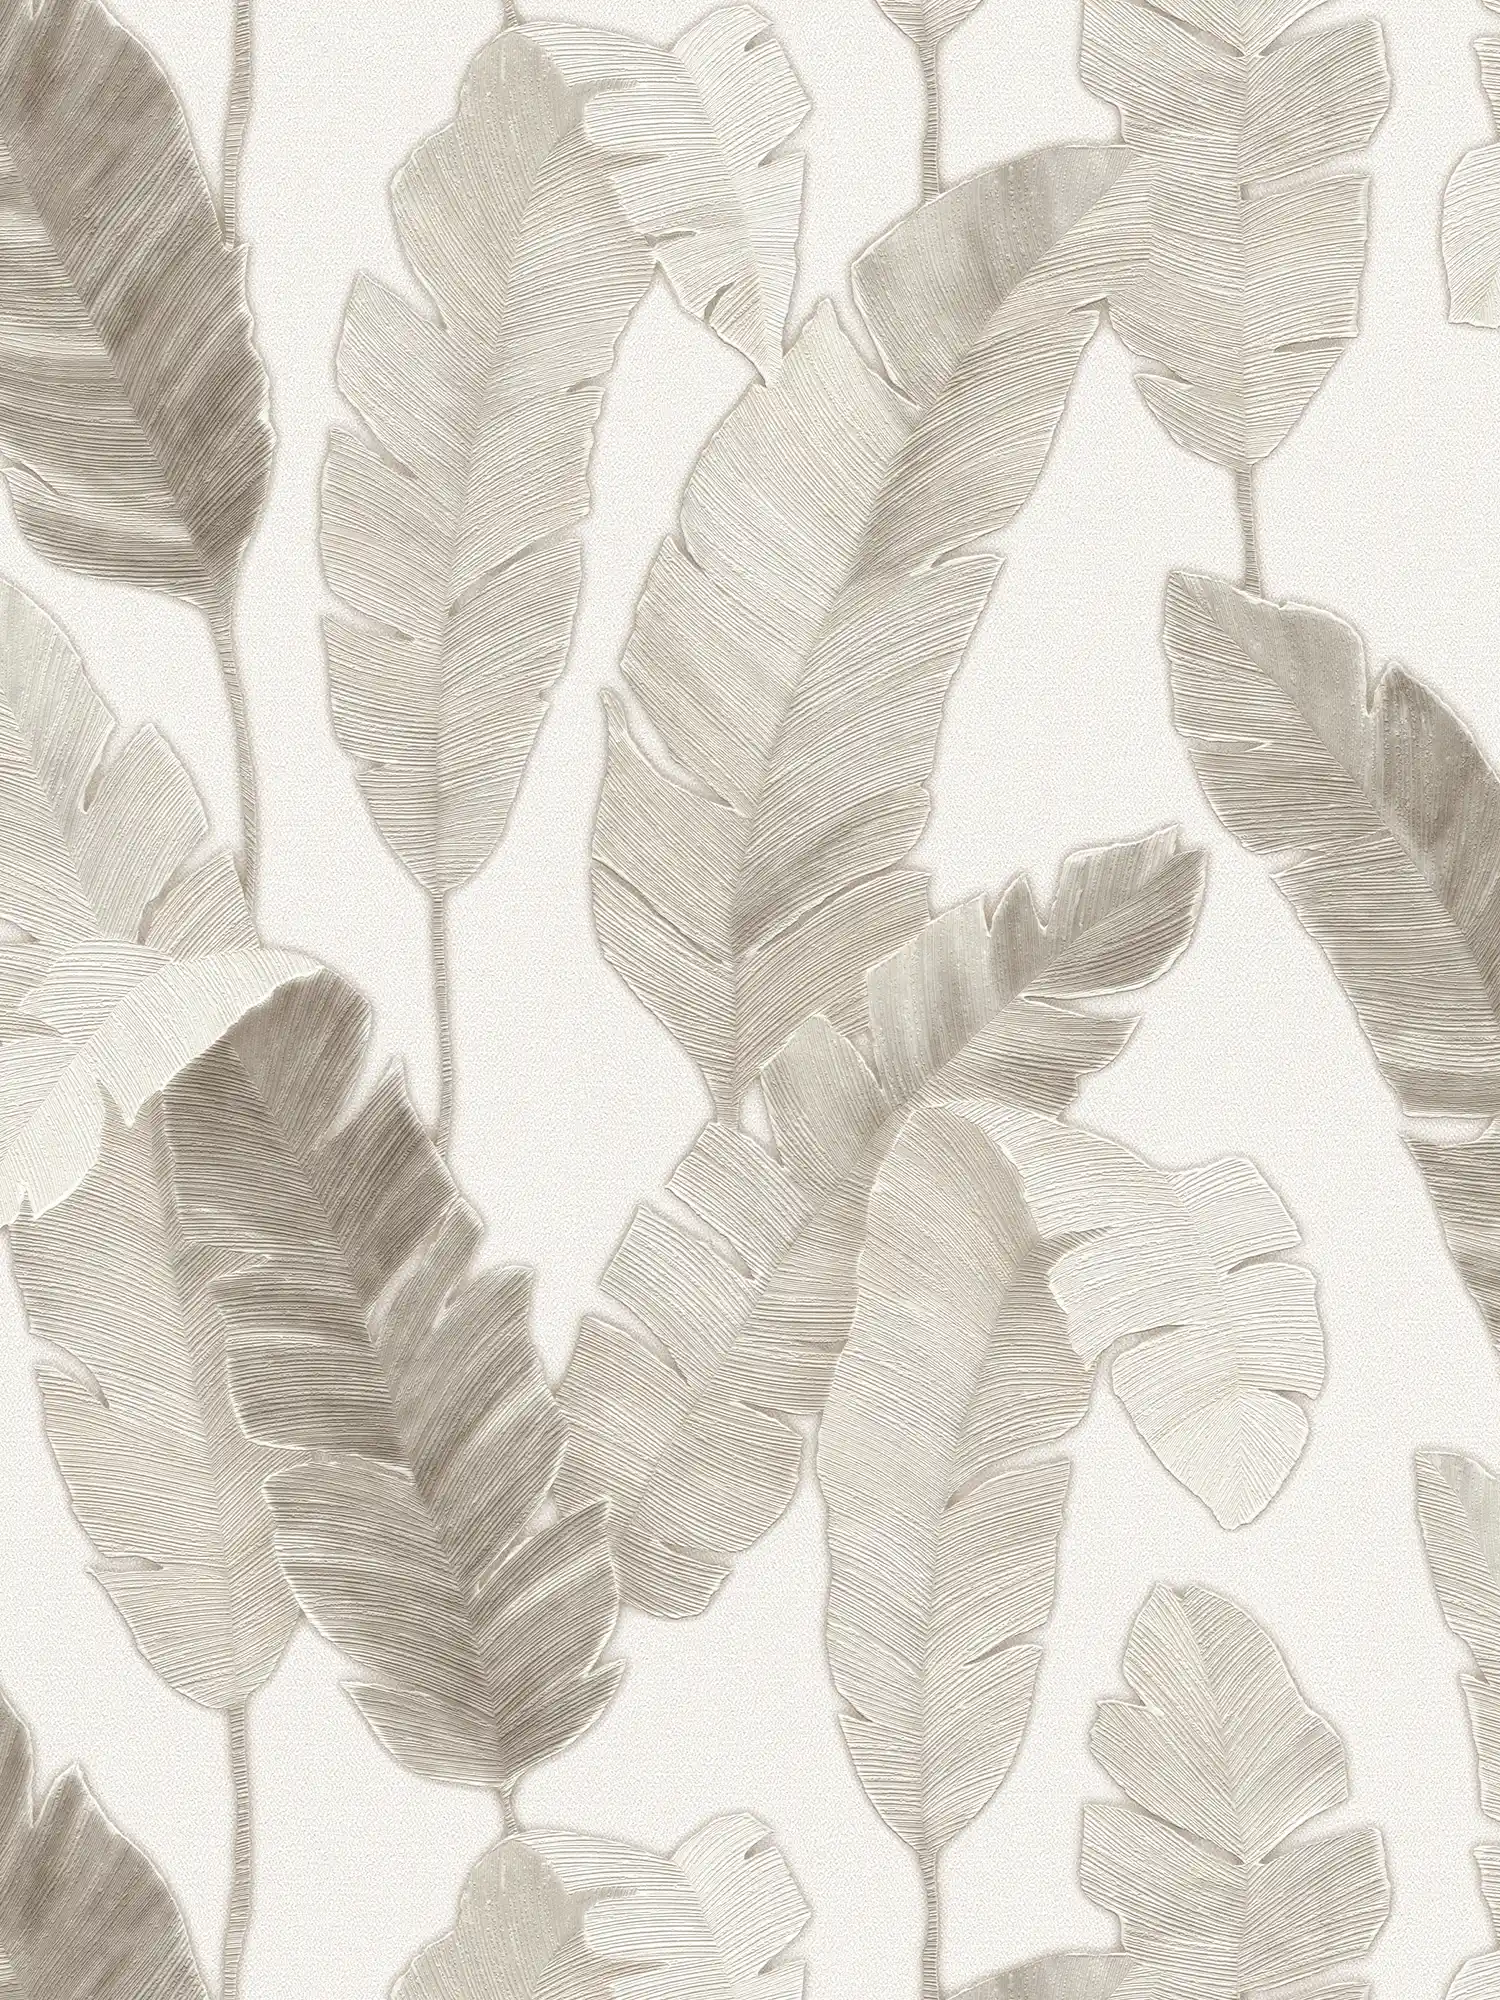 Vliesbehang met subtiele palmbladeren - wit, beige, grijs
